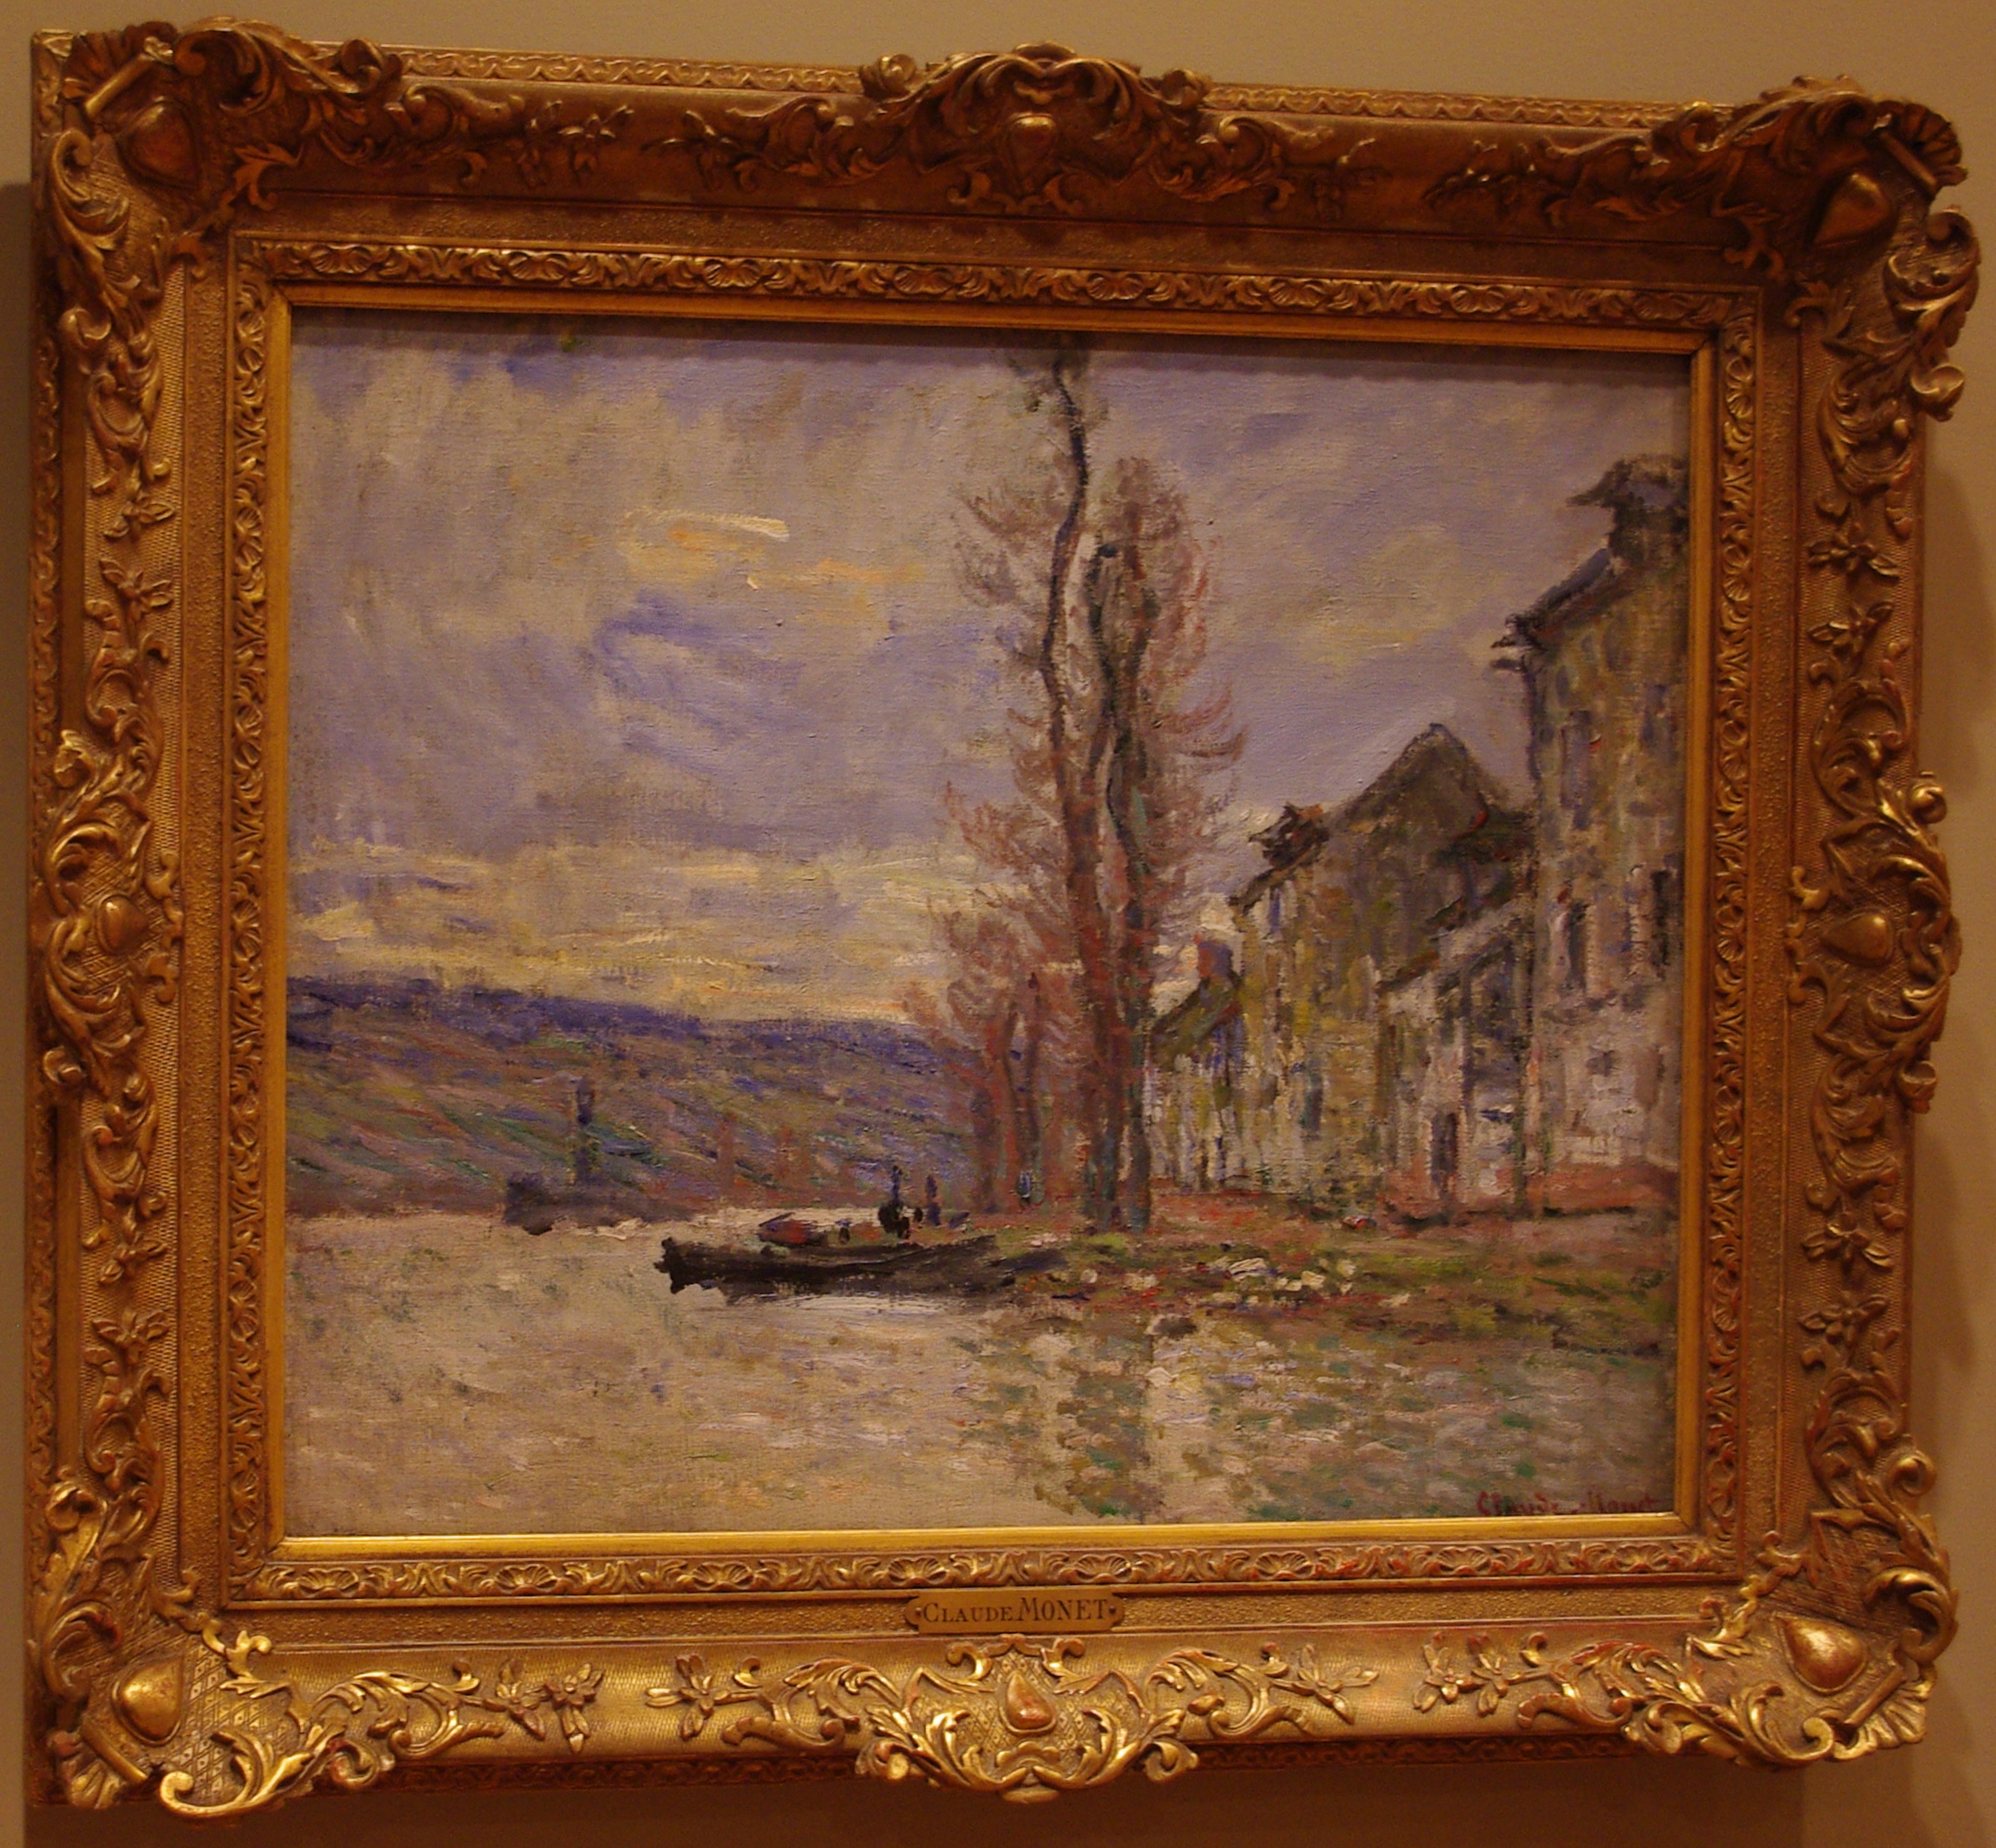 River at Lavacourt by Claude Monet - Portland Art Museum